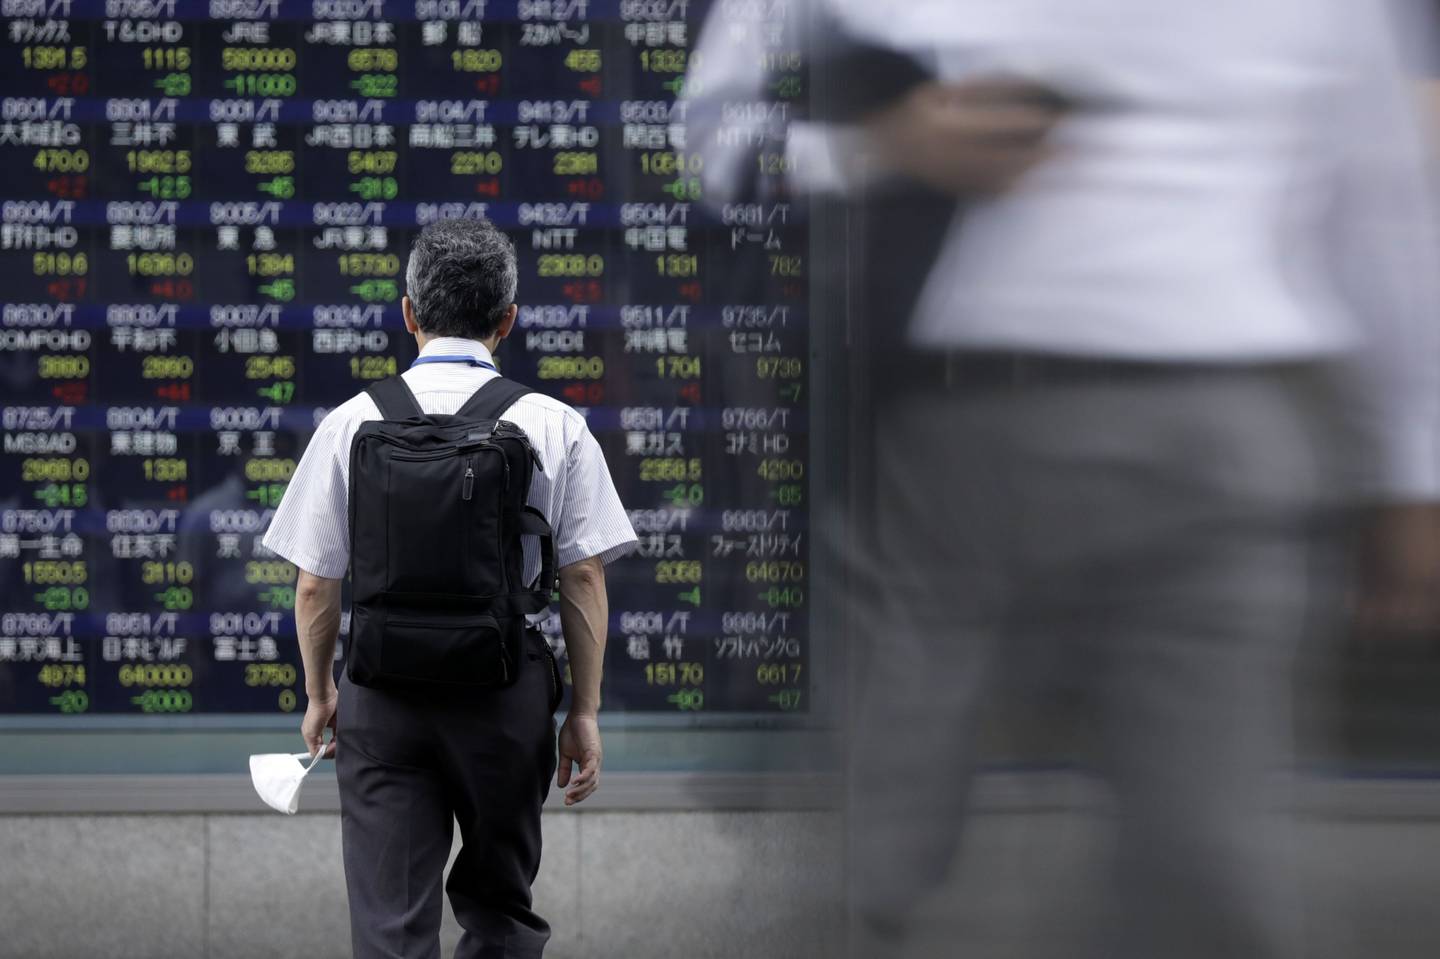 Información de la Bolsa de Tokio en una pizarra electrónica